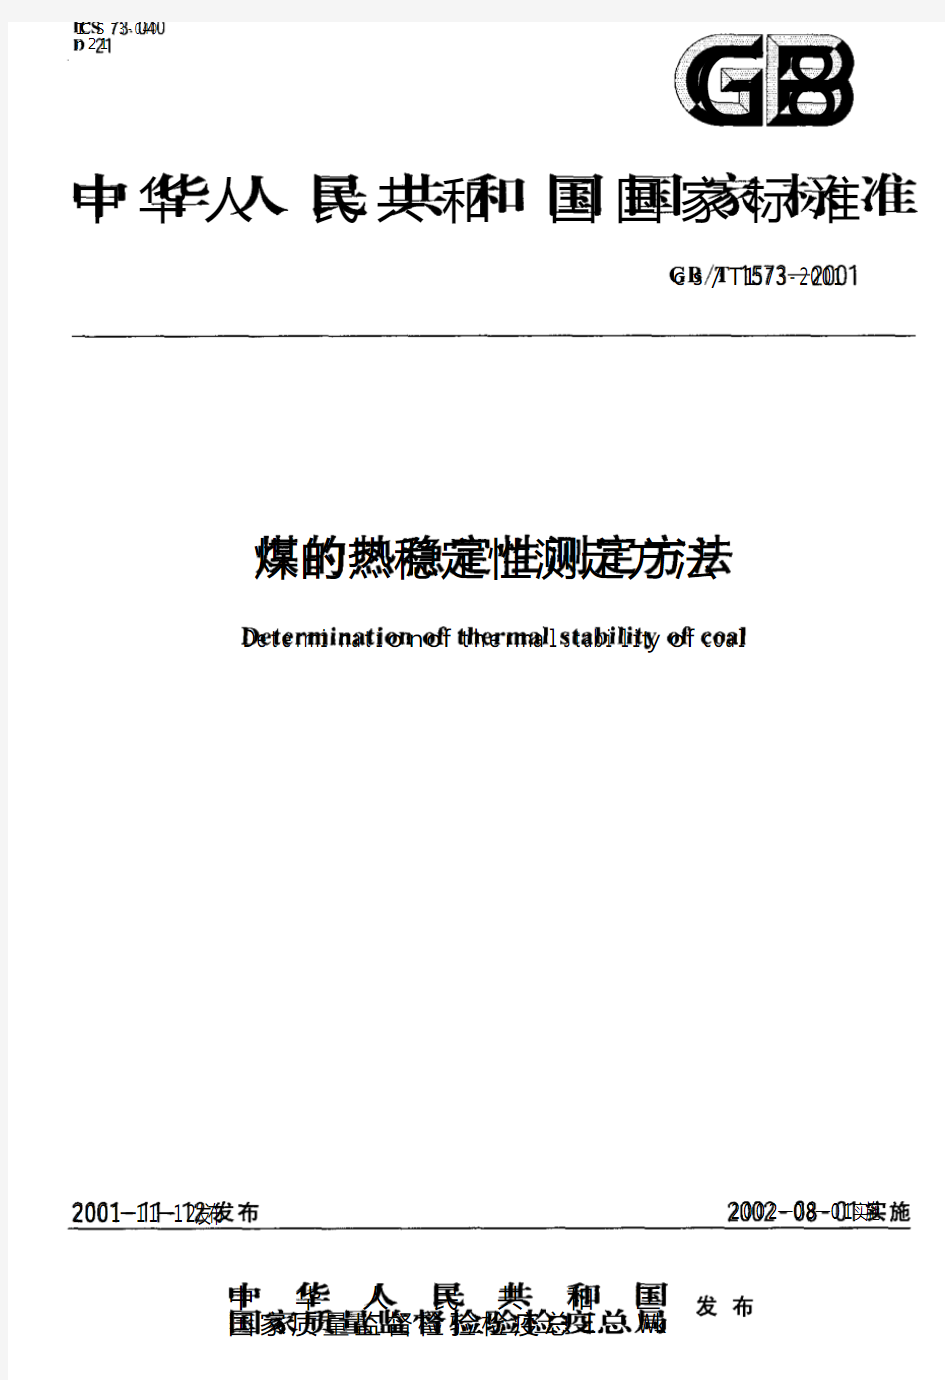 煤的热稳定性测定方法